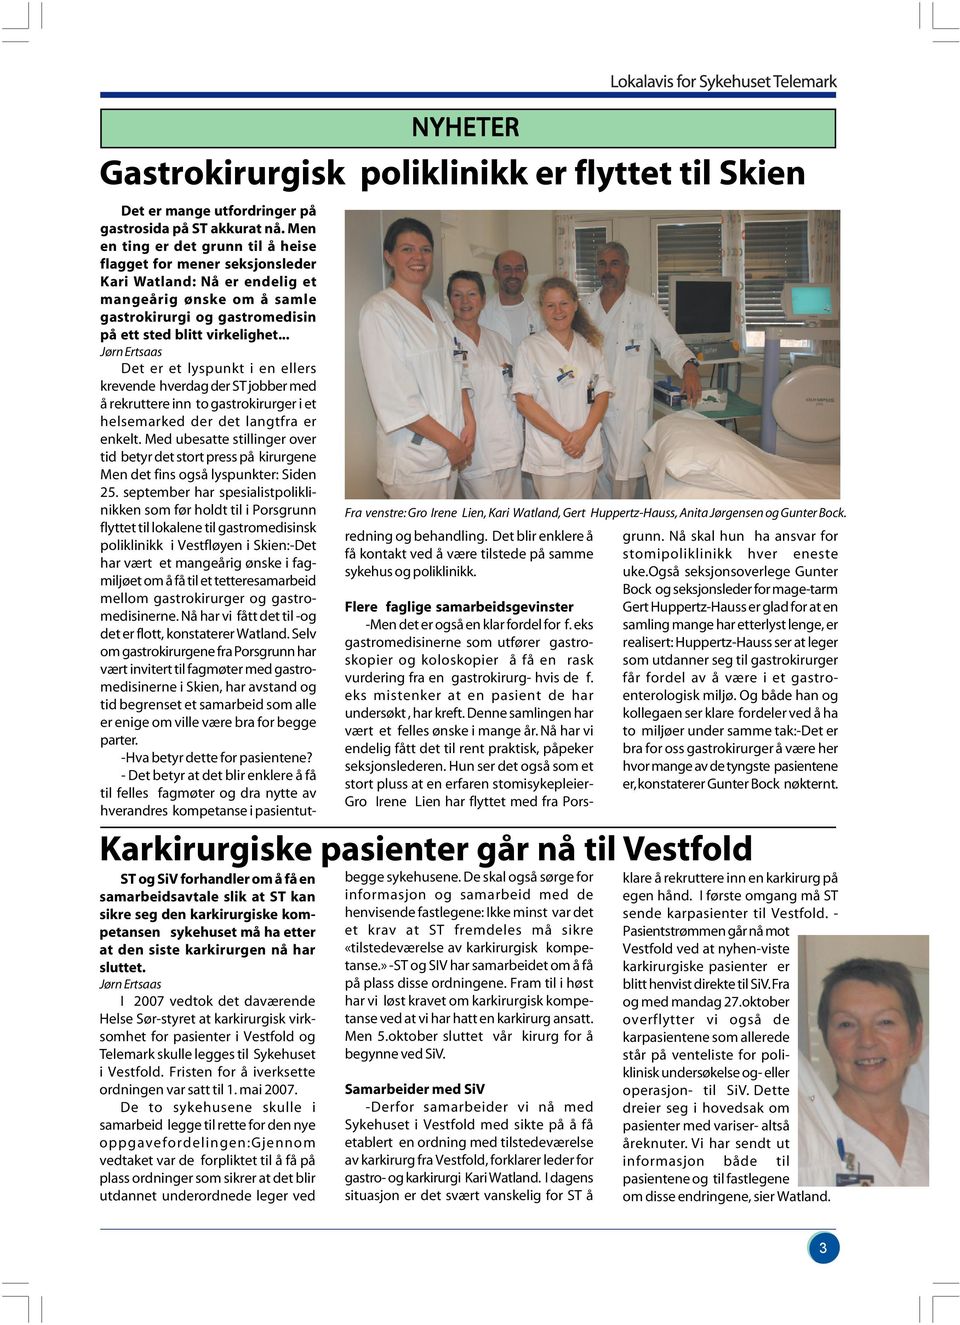 I 2007 vedtok det daværende Helse Sør-styret at karkirurgisk virksomhet for pasienter i Vestfold og Telemark skulle legges til Sykehuset i Vestfold. Fristen for å iverksette ordningen var satt til 1.